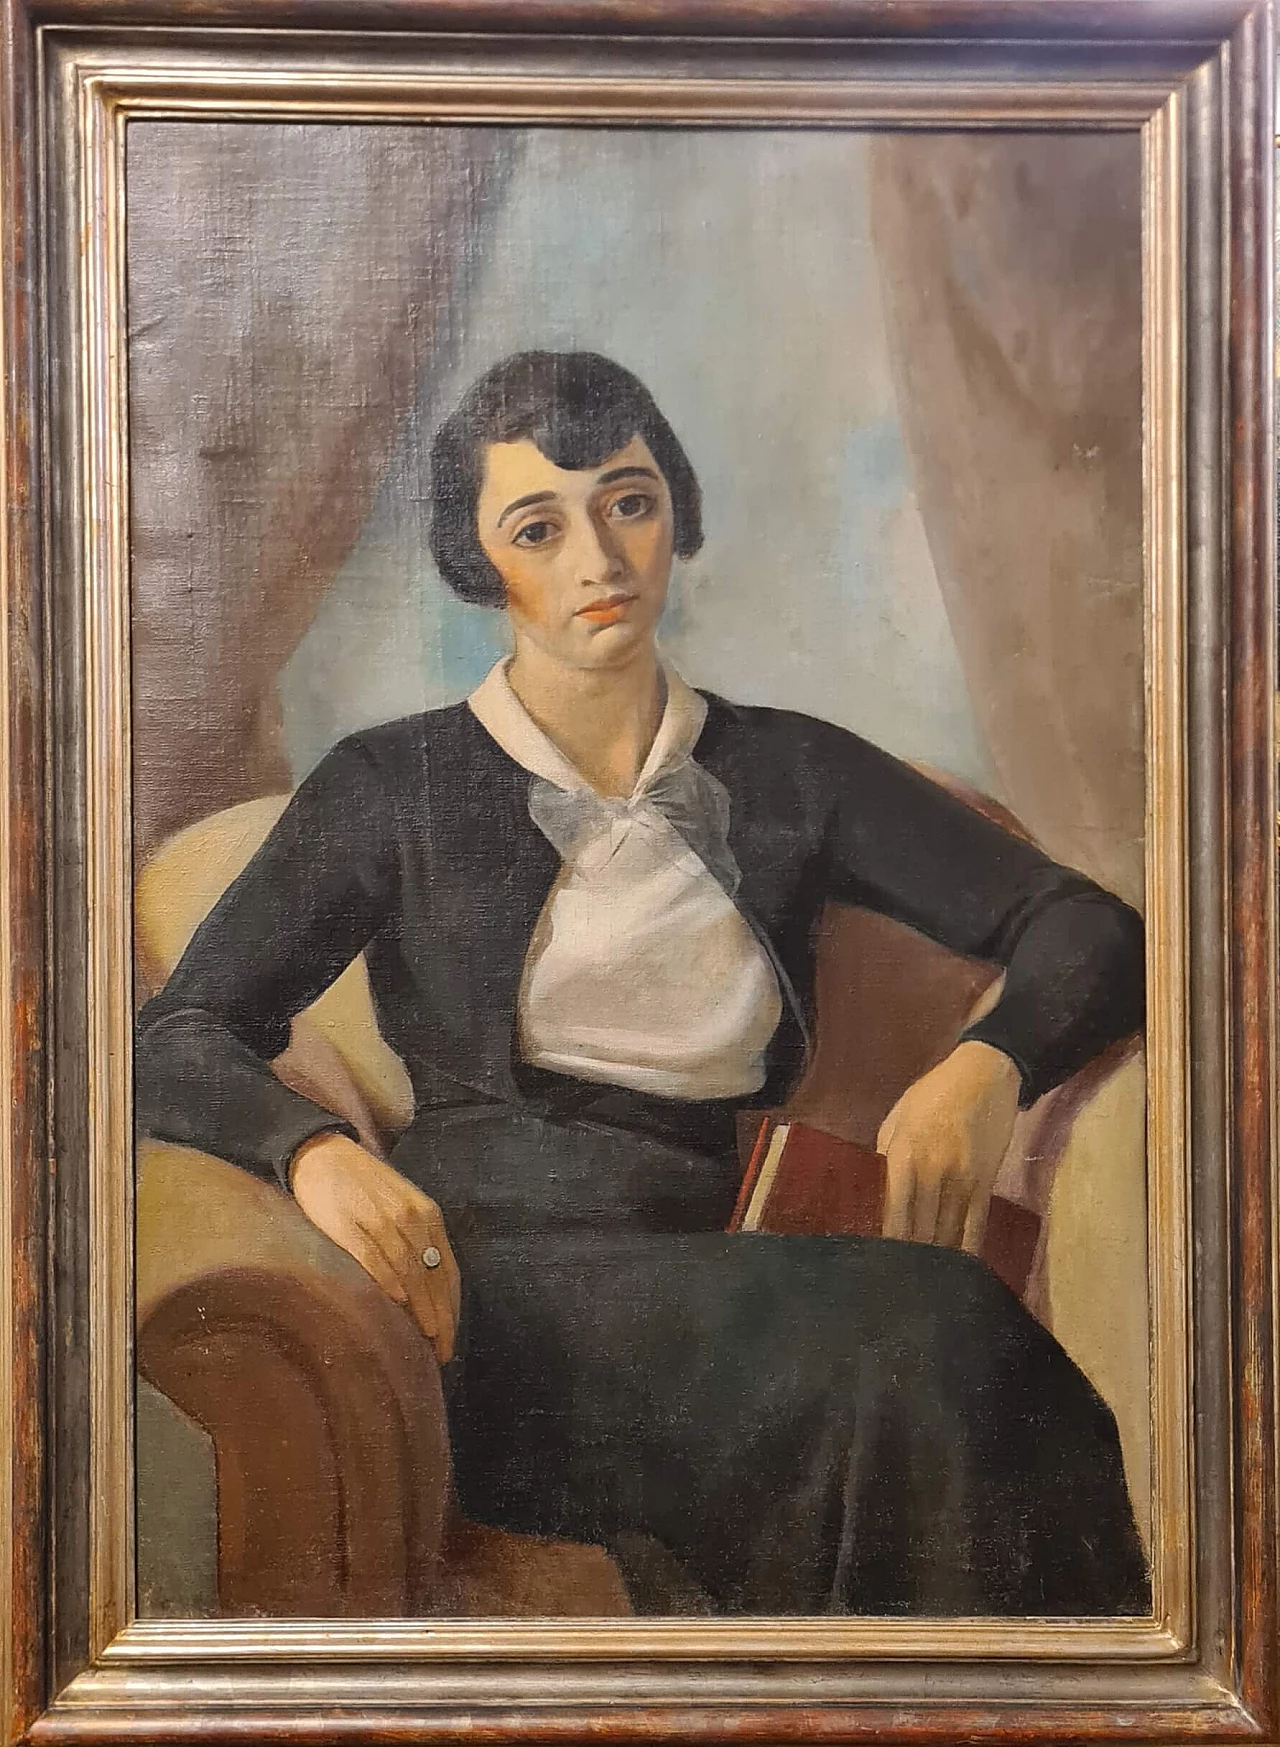 Ritratto di figura femminile seduta con libro, dipinto a olio su tela 1